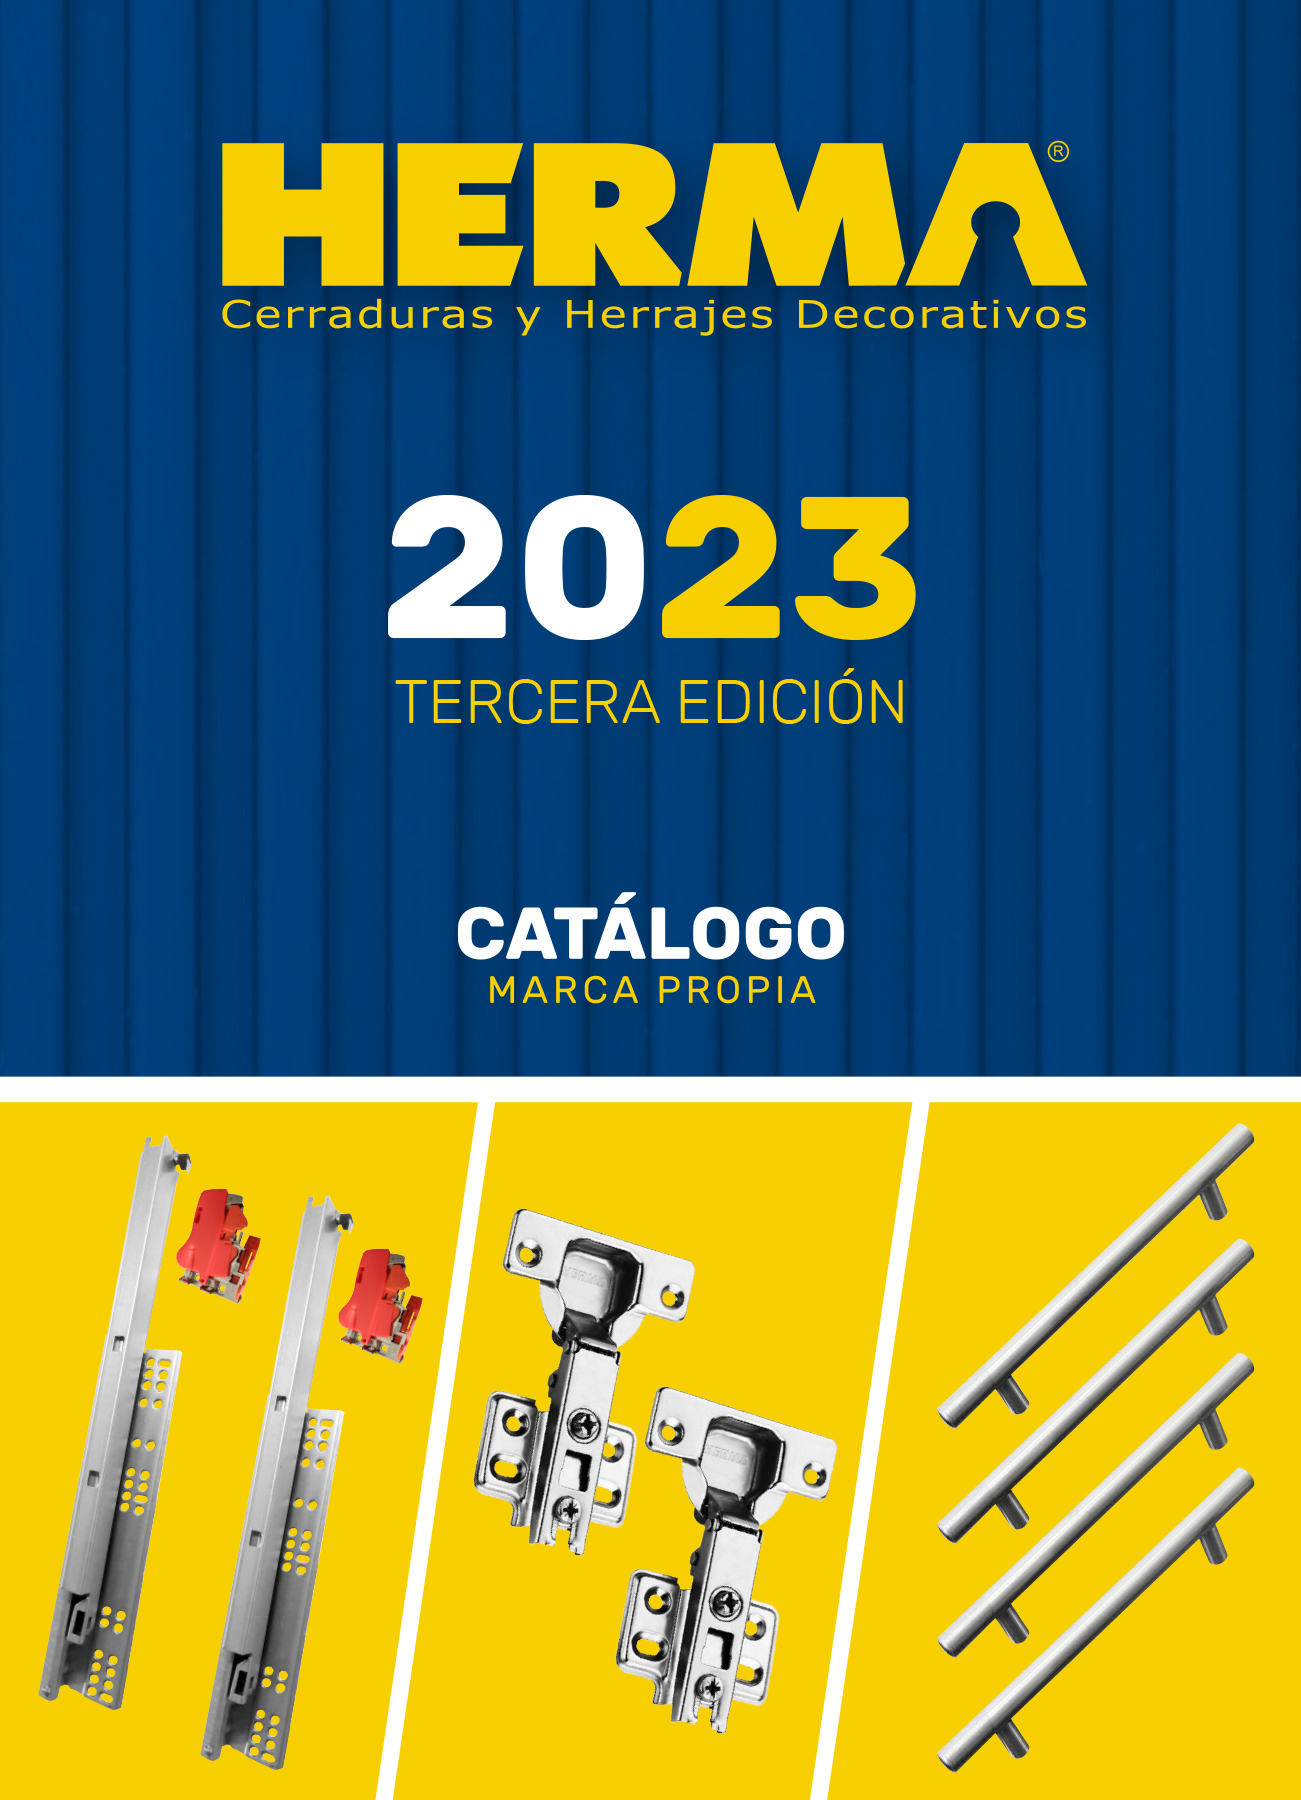 Catálogo Herma 2023 tercera edición 